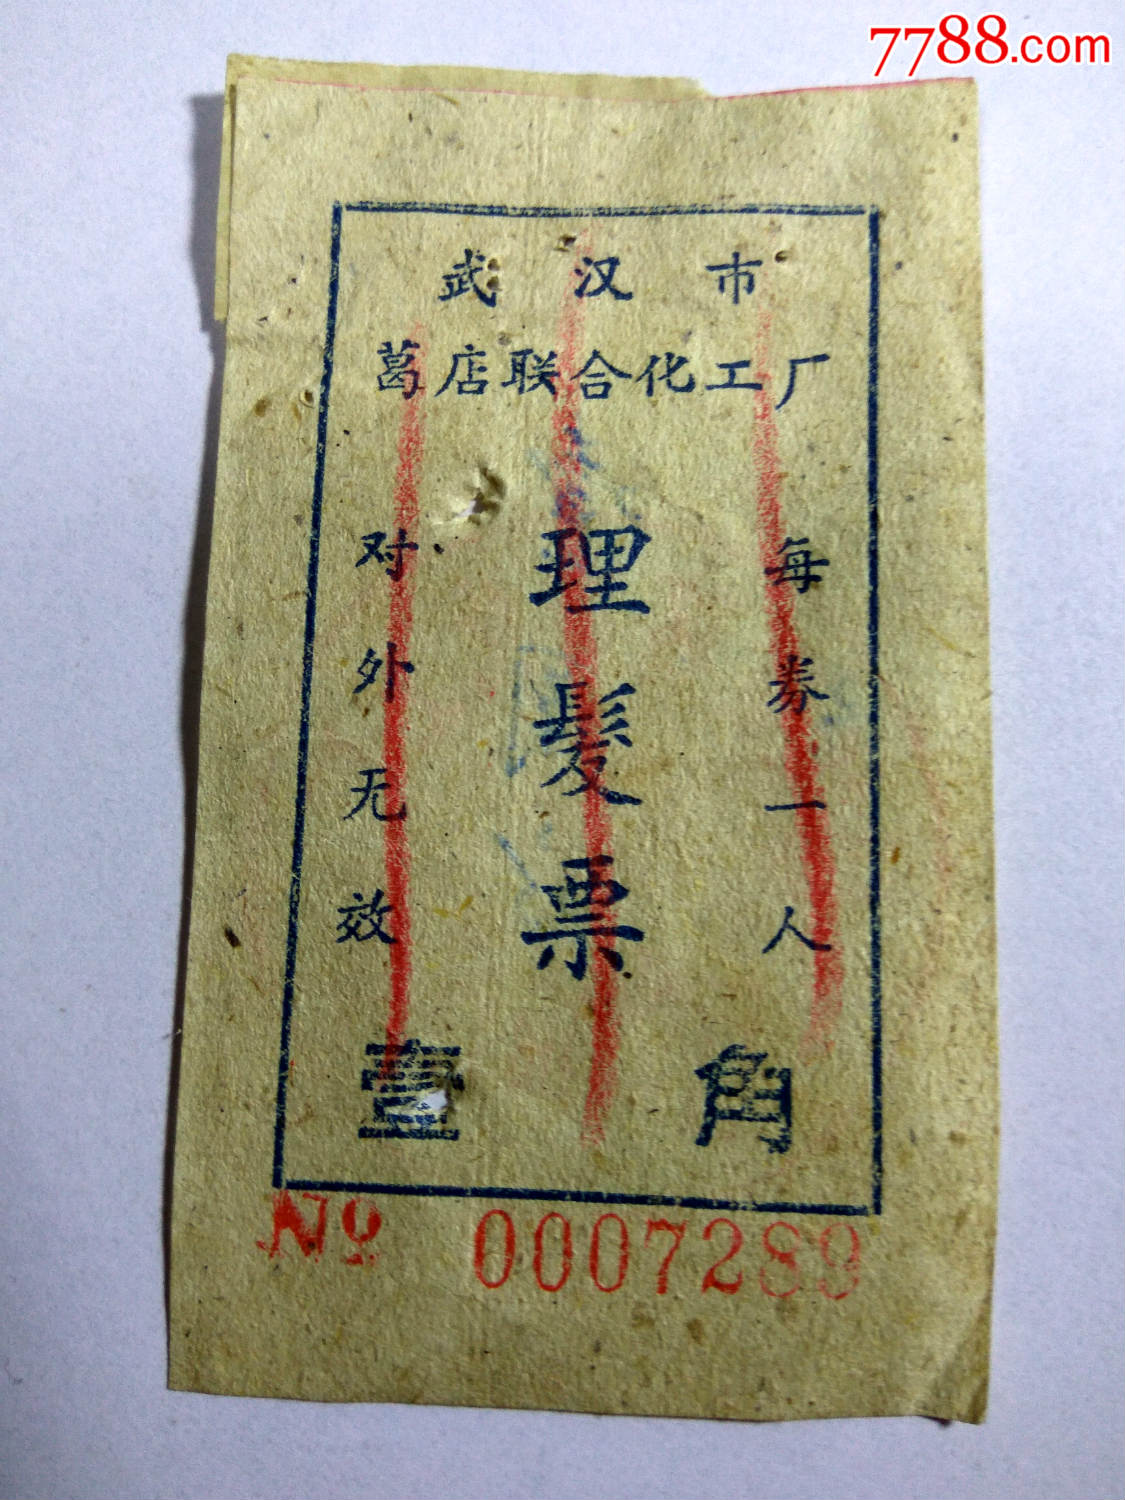 生活票证(理发票)武汉市葛店联合化工厂-其他供